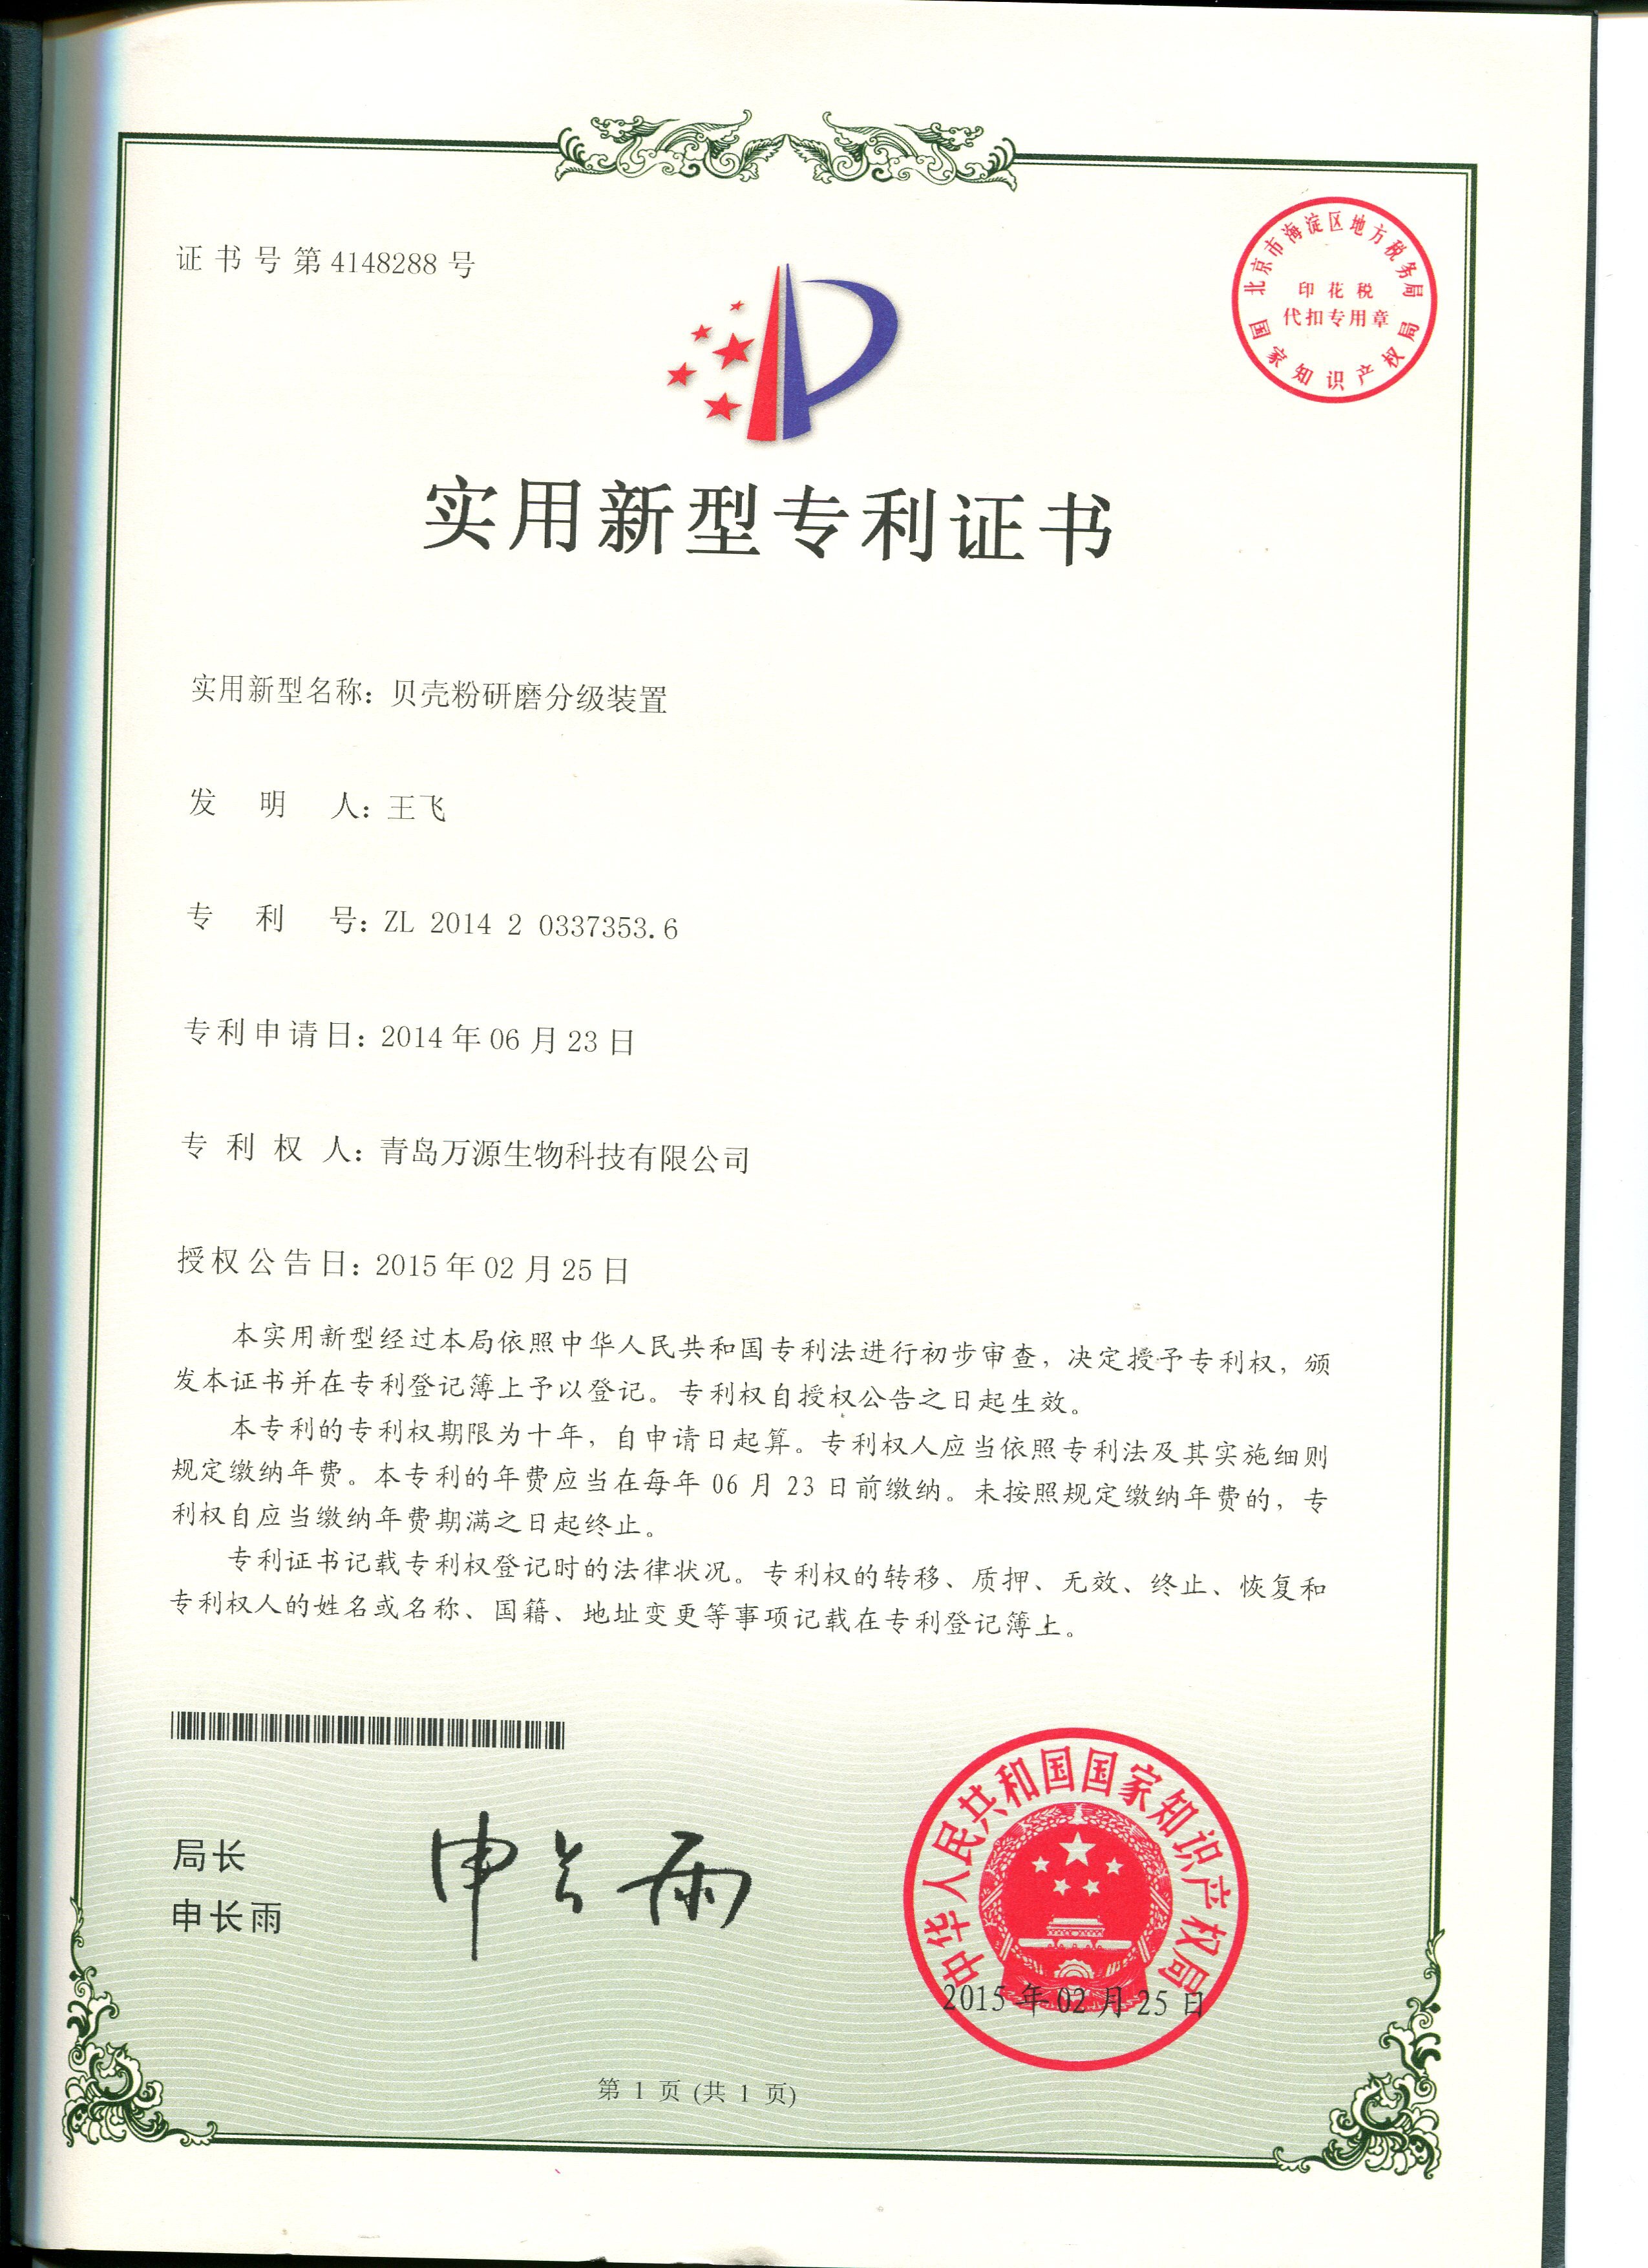 2015年02月25日獲得專利證書貝殼粉研磨分級裝置